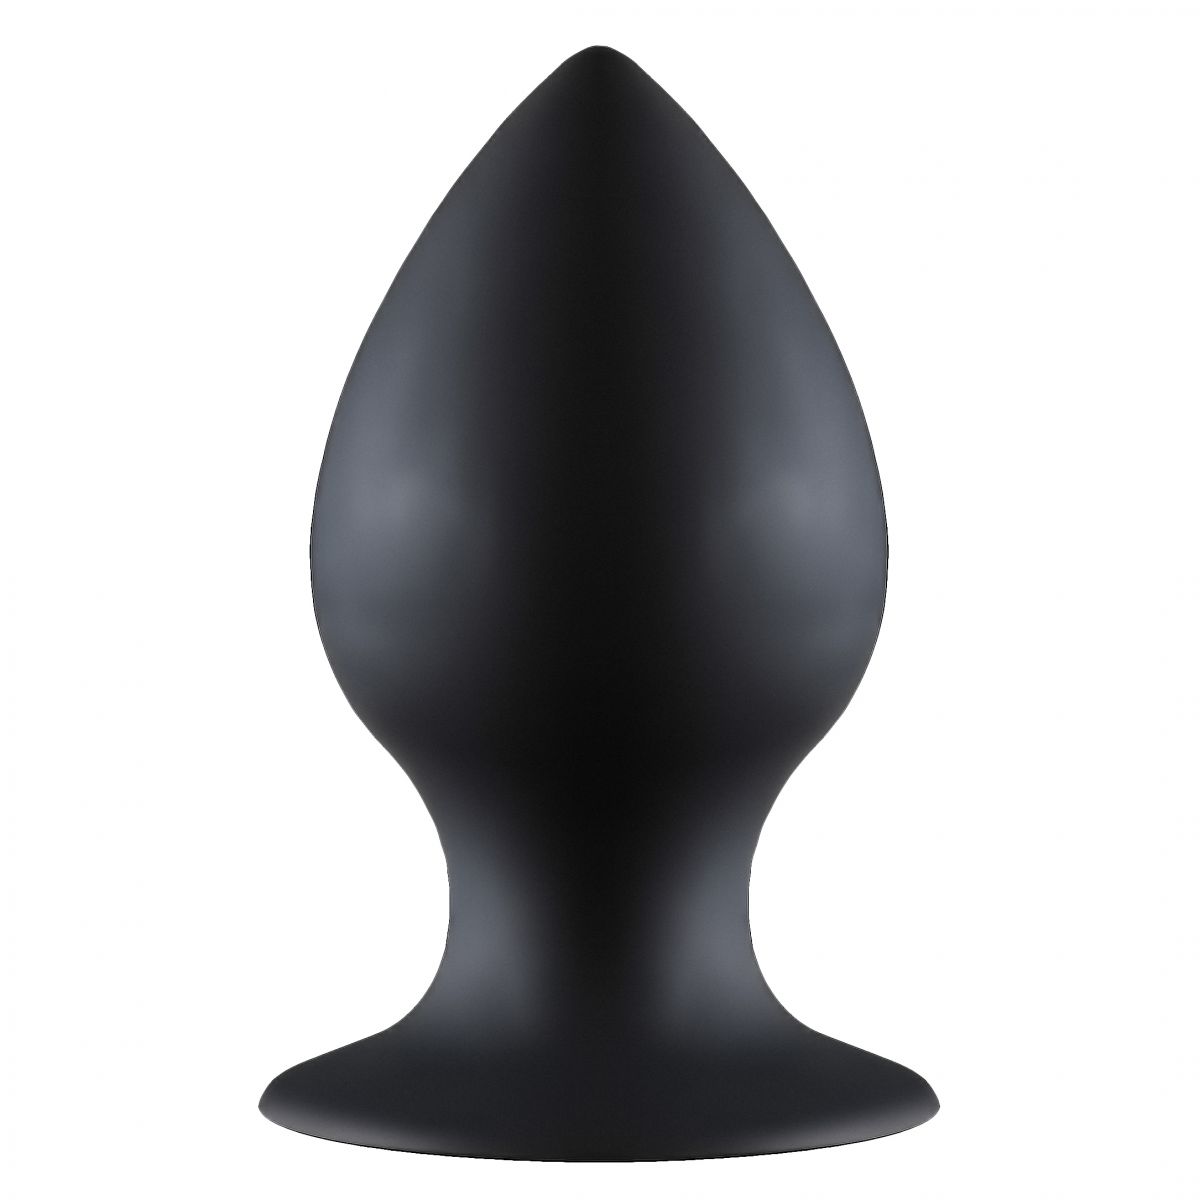 Чёрная анальная пробка Thick Anal Plug Large - 11,5 см. от Lola toys